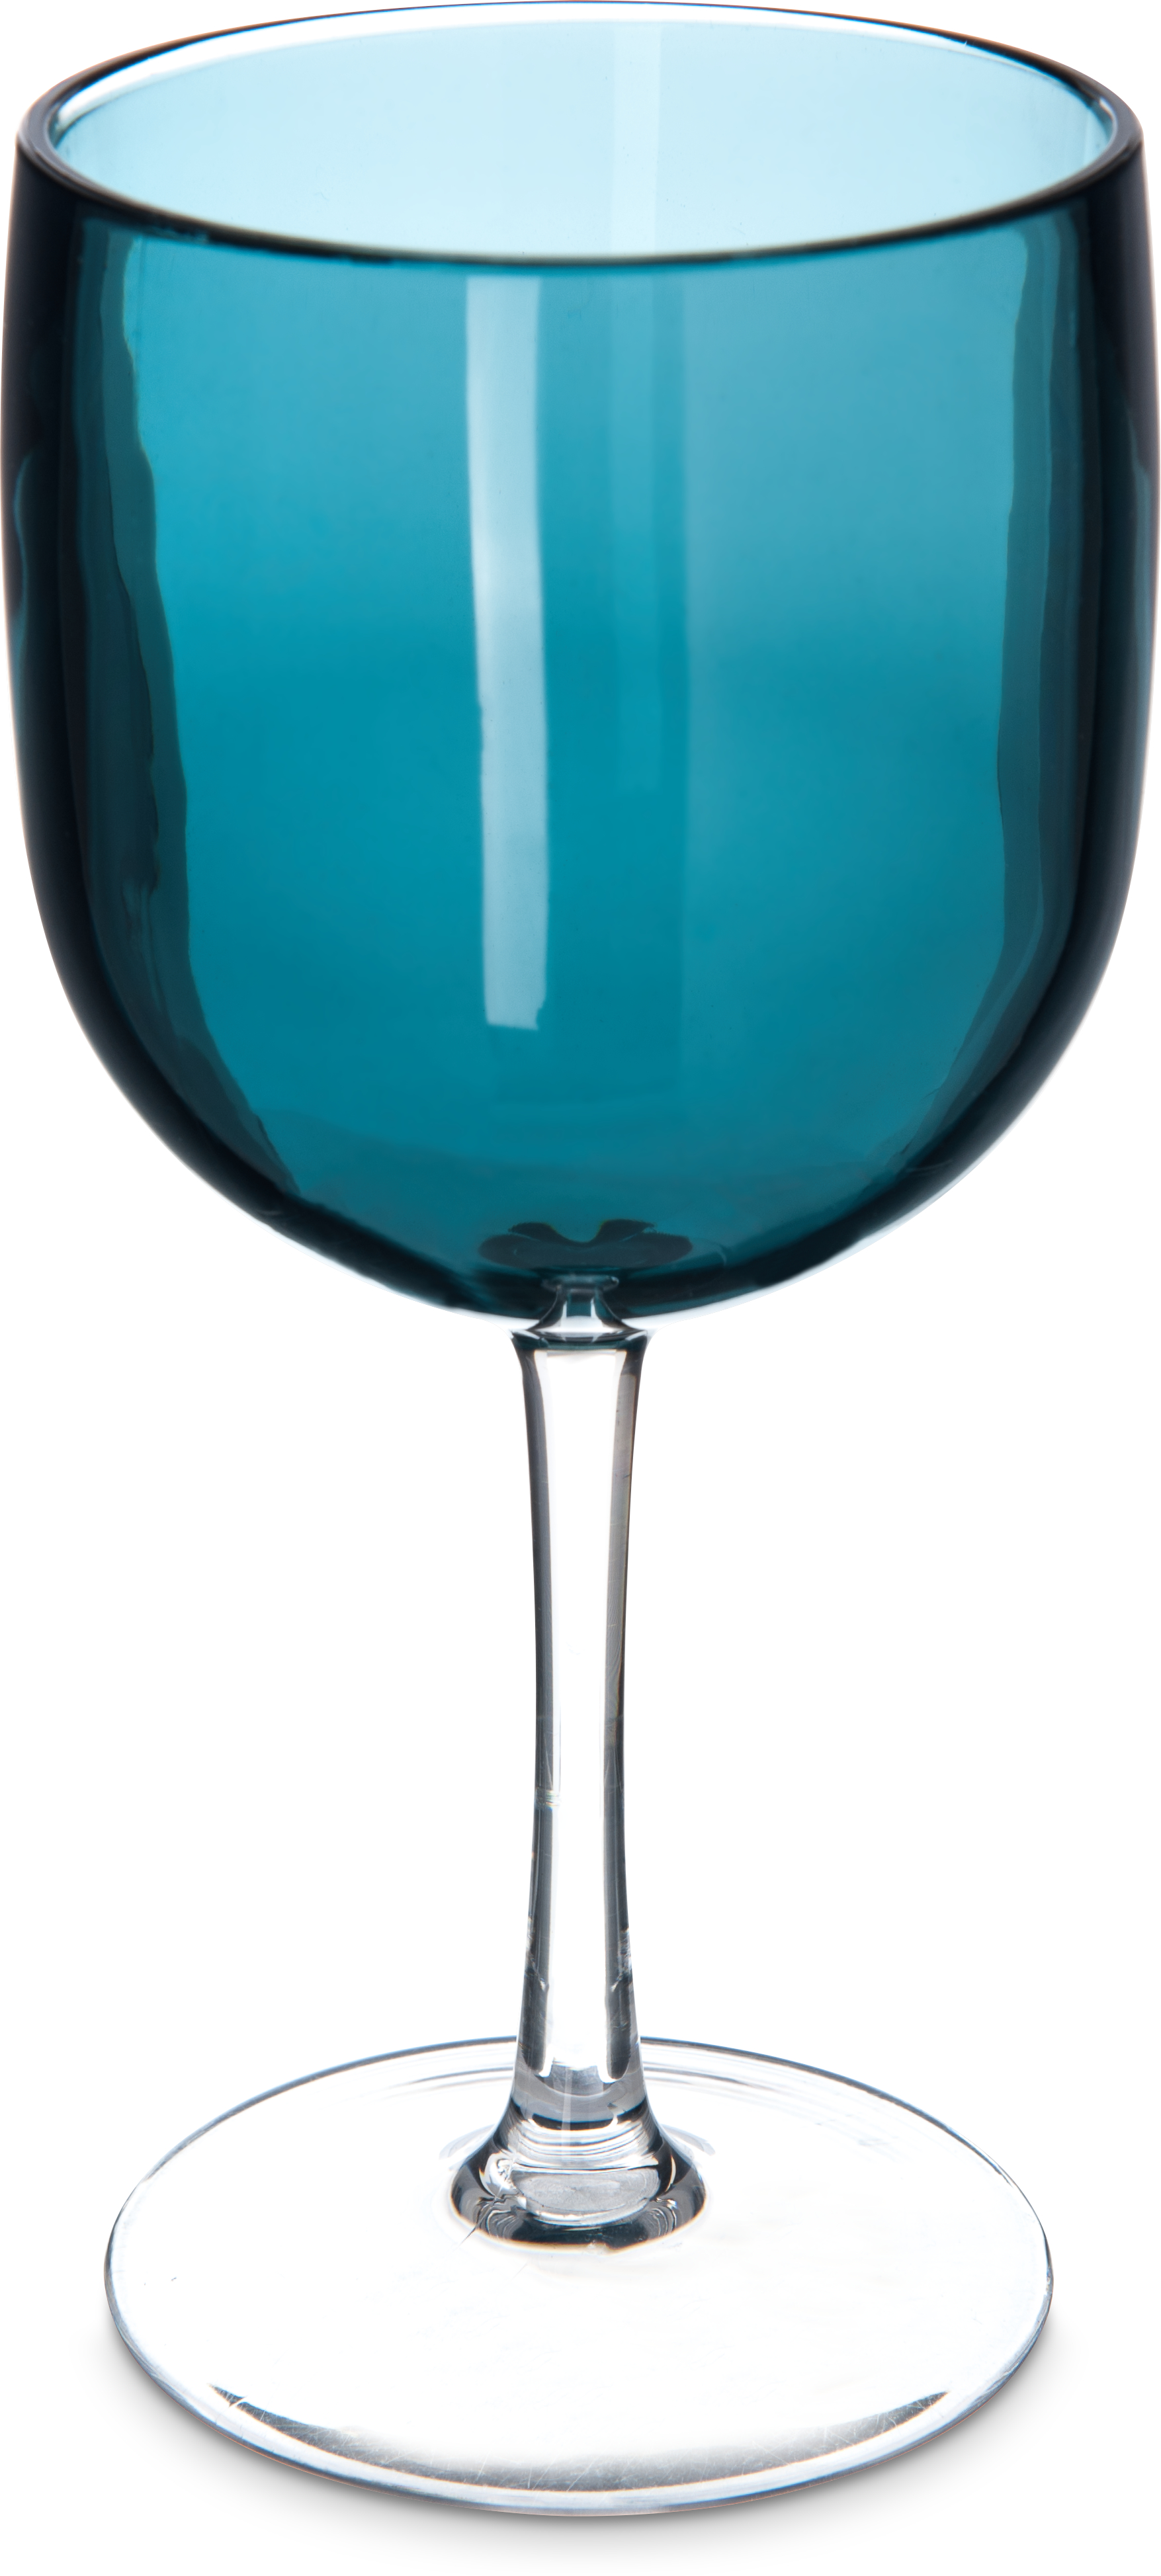 Epicure Cased Wine Goblet 16 oz - Teal